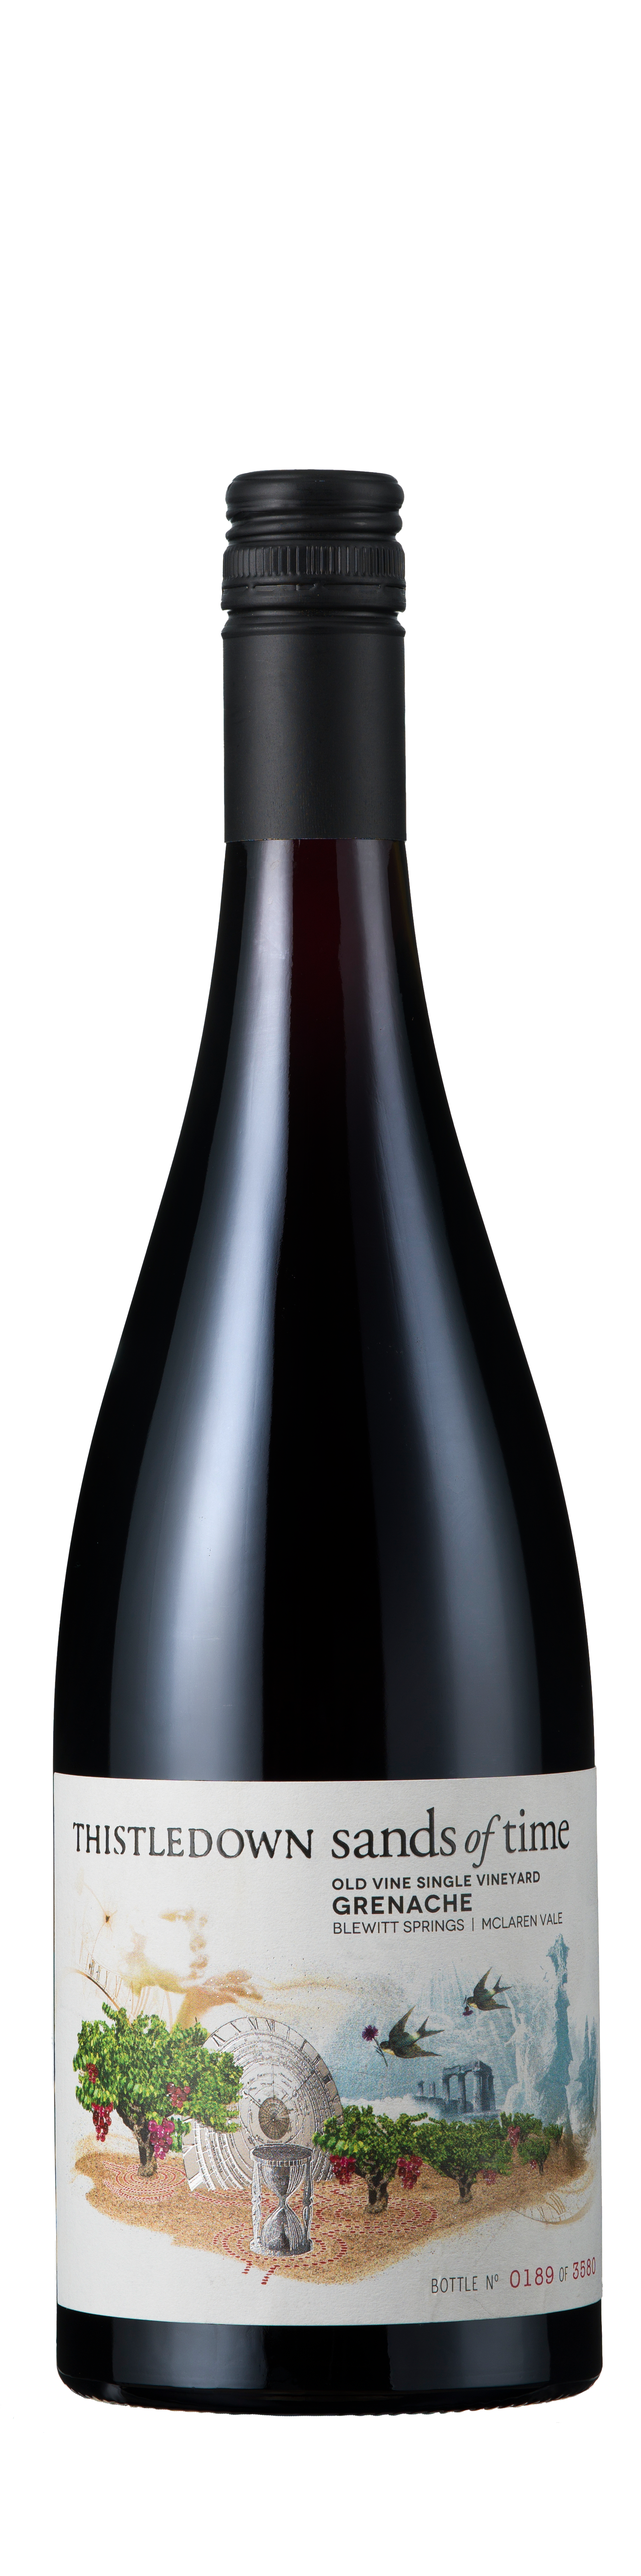 Bottle shot - Thistledown, Sands of Time Single Vineyard Old Vine Grenache, Blewitt Springs, McLaren Vale, Australia